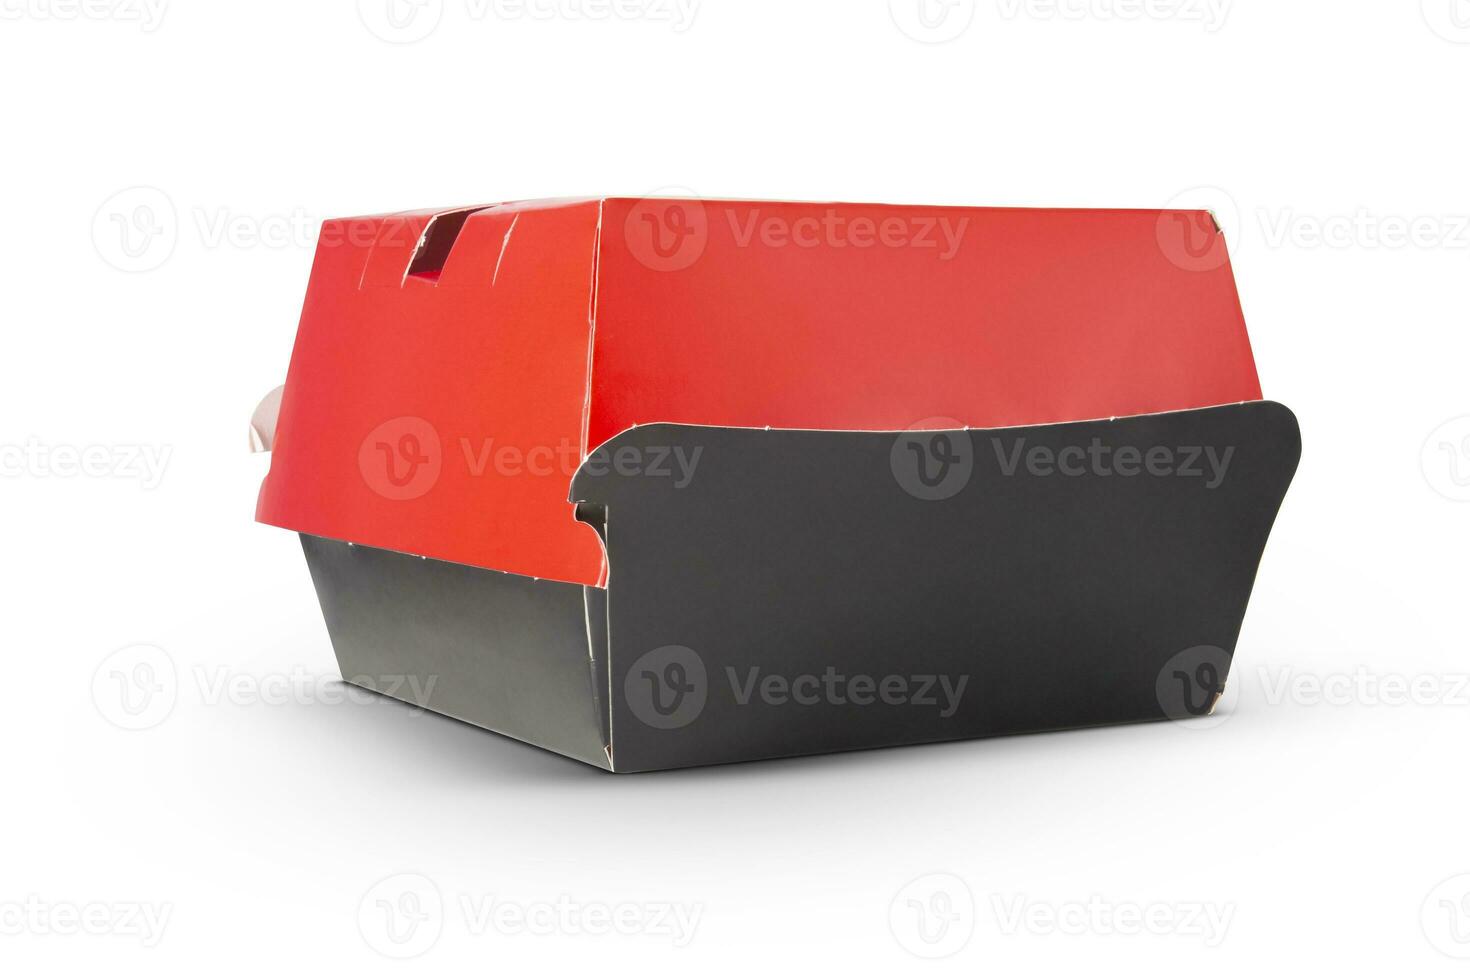 leer geschlossen rot und schwarz Kunst Burger Box isoliert auf Weiß Hintergrund foto